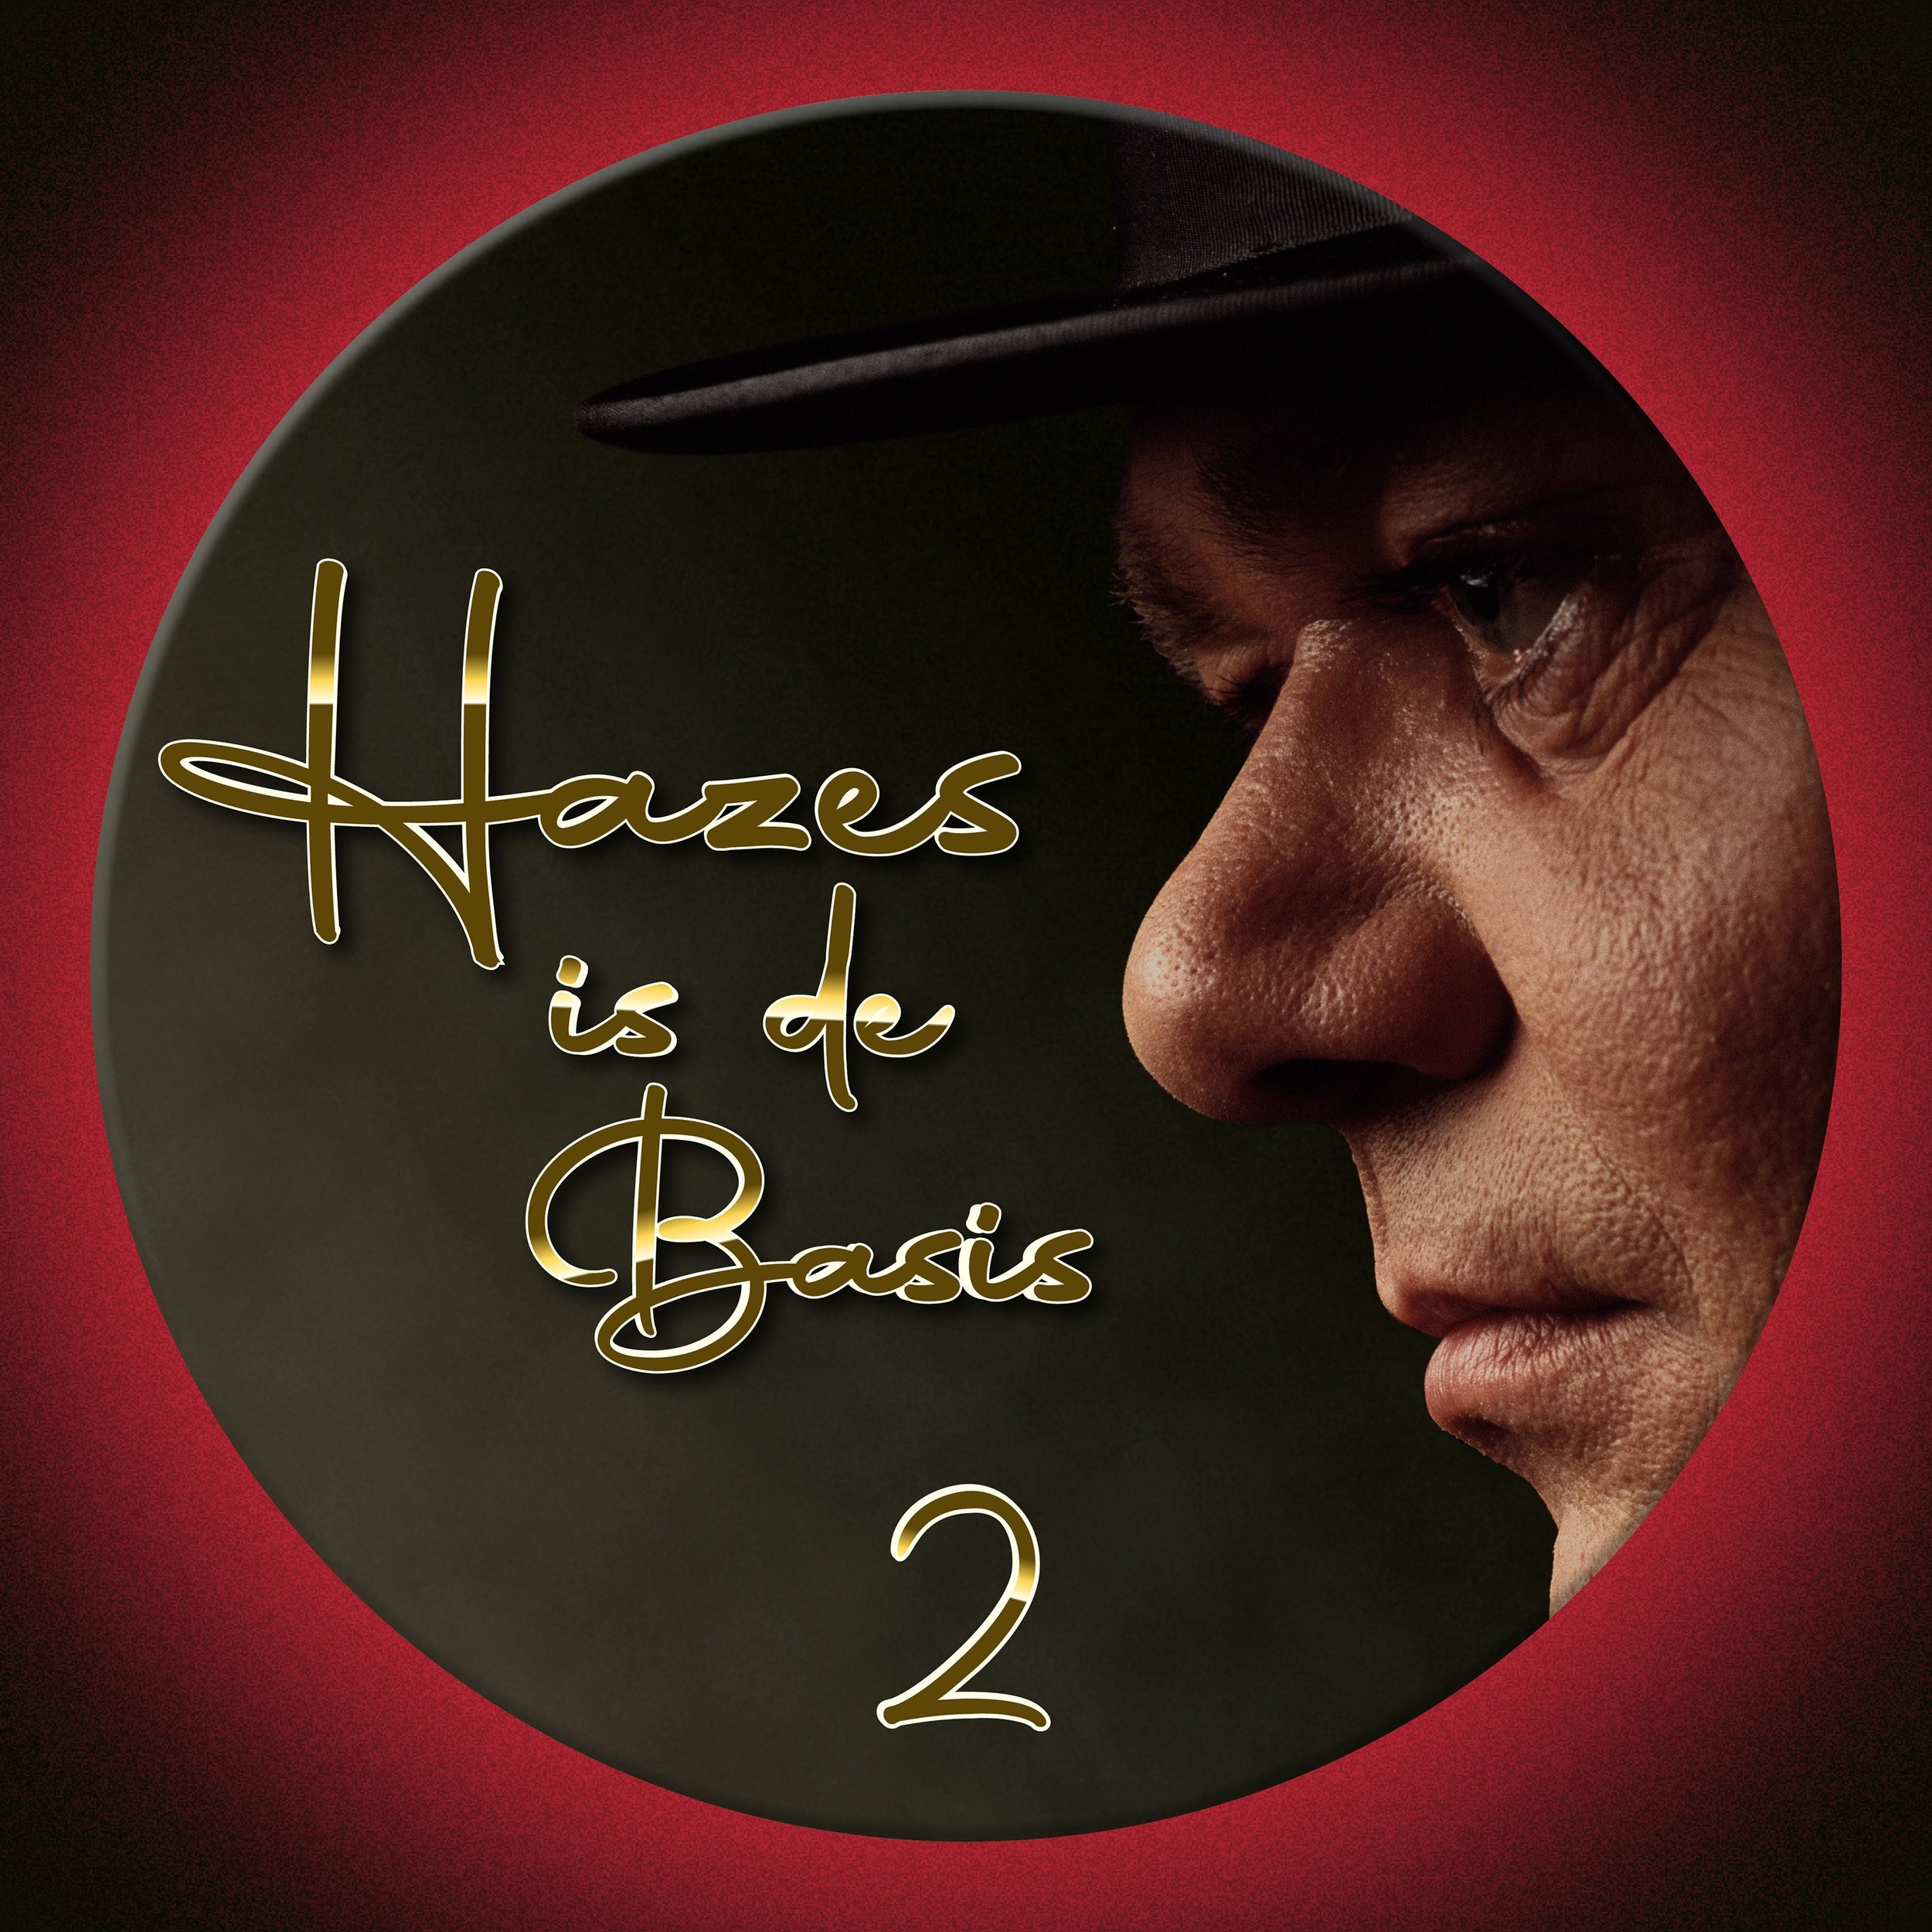 Hazes_is_de_basis2.jpg